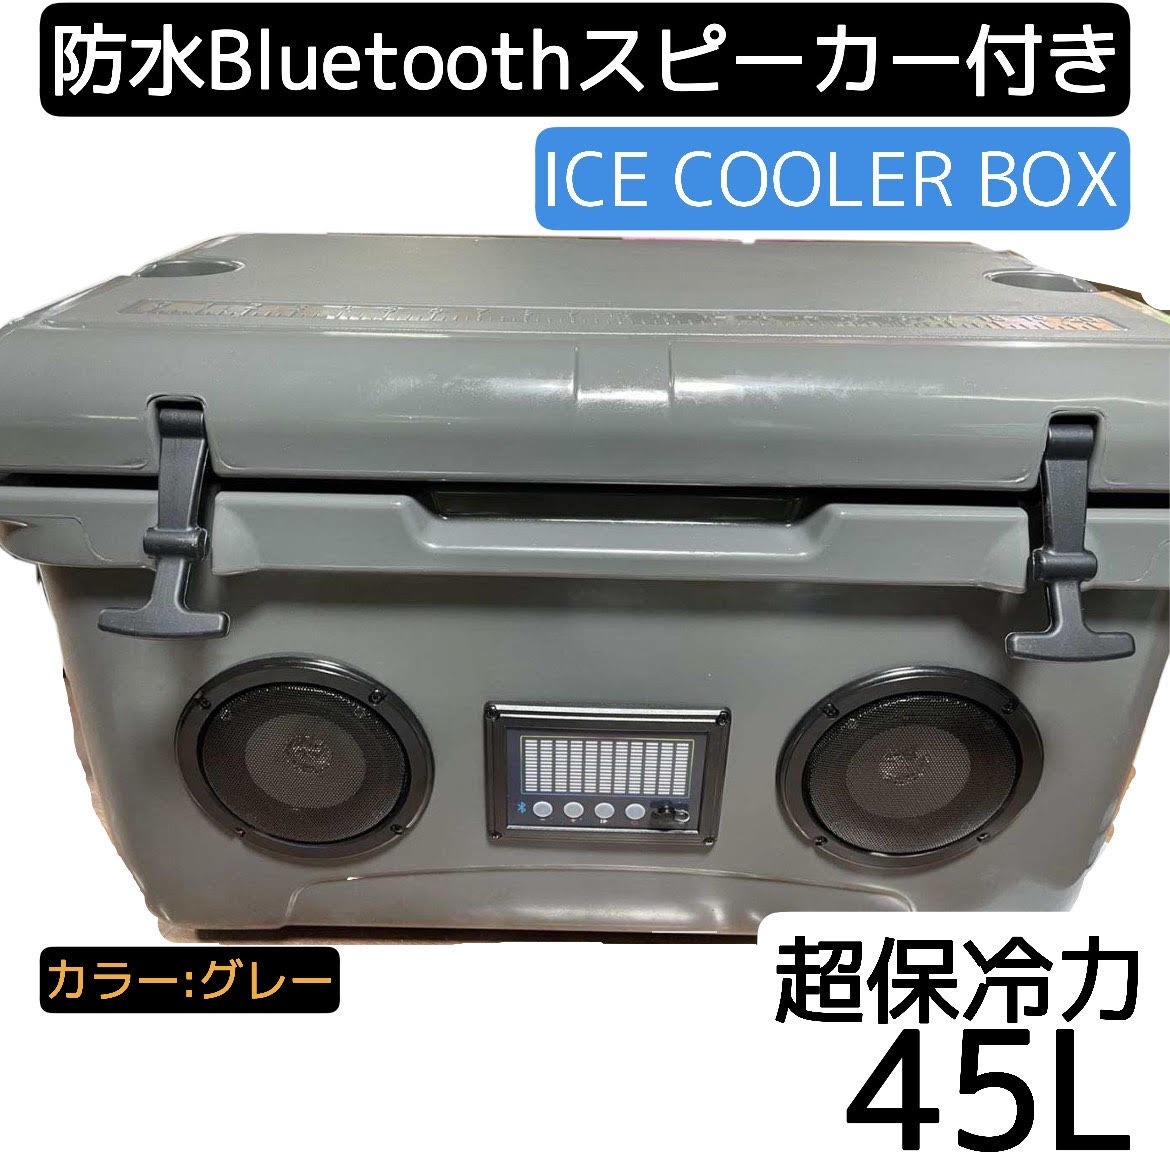 豊富なギフト 超保冷 クーラーボックス大 ホワイト 高音質 Bluetooth